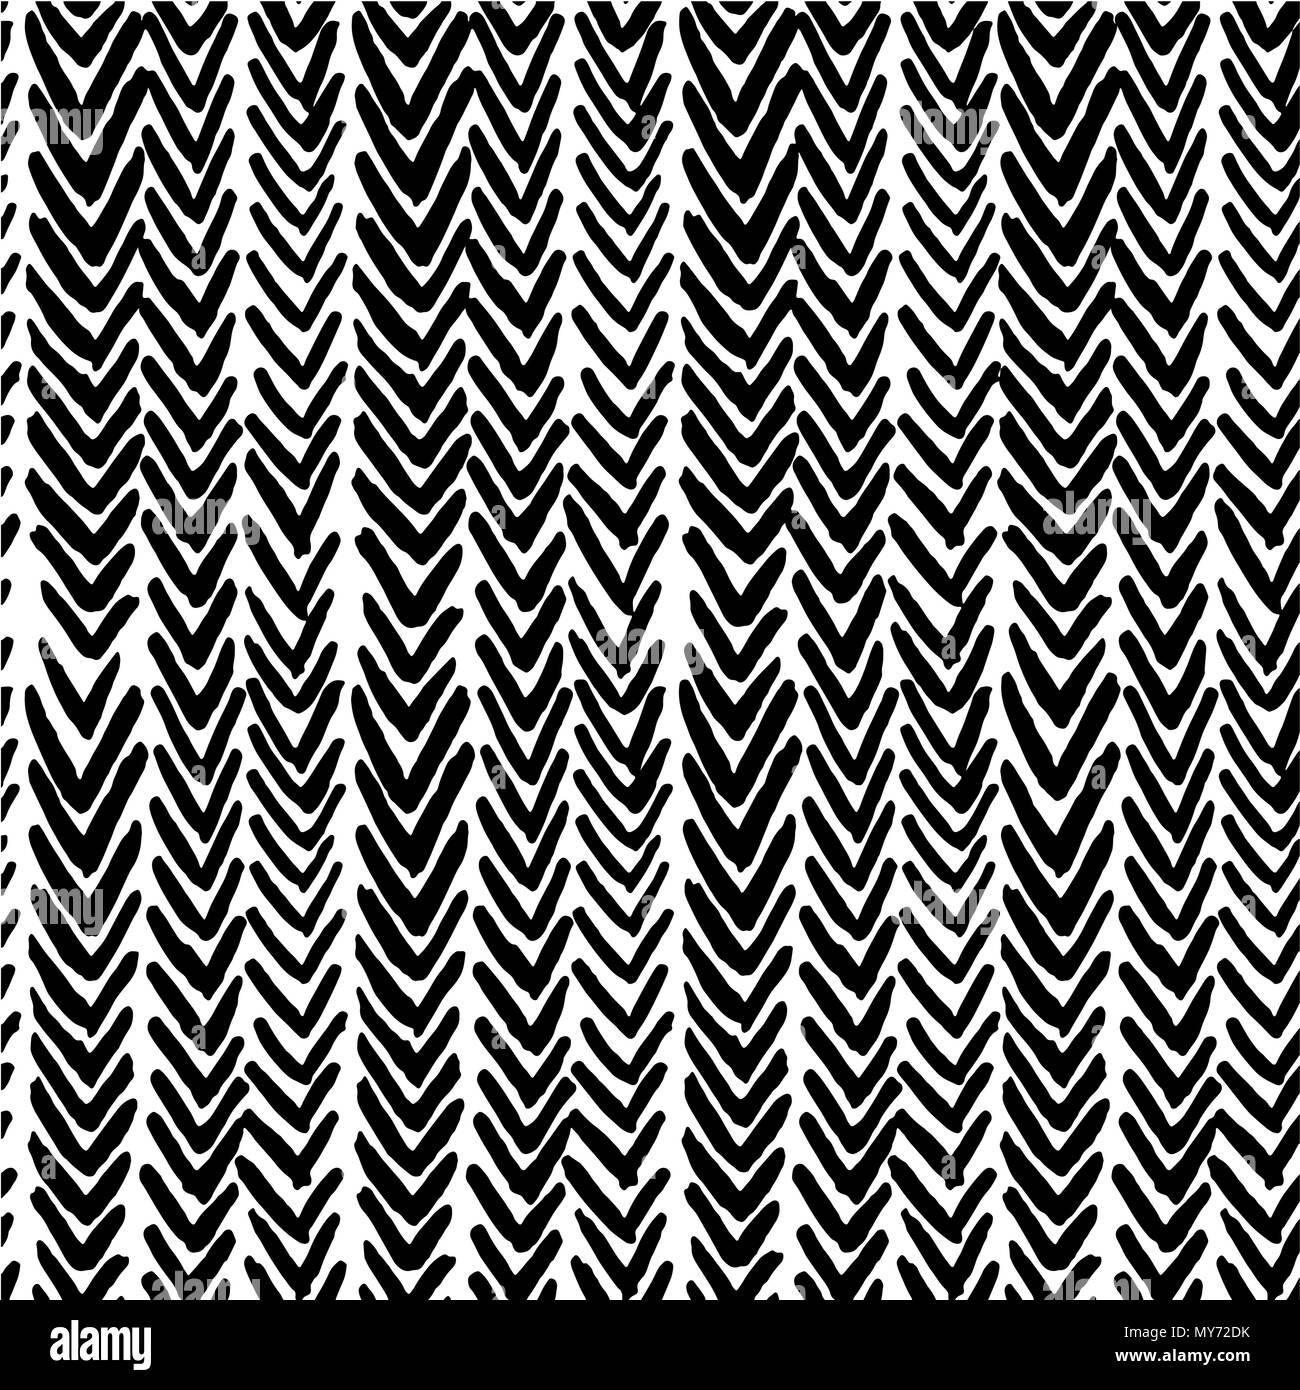 Die nahtlose Vektor Muster, mit Ikat Rippen in blsck und weißen Farben Stock Vektor